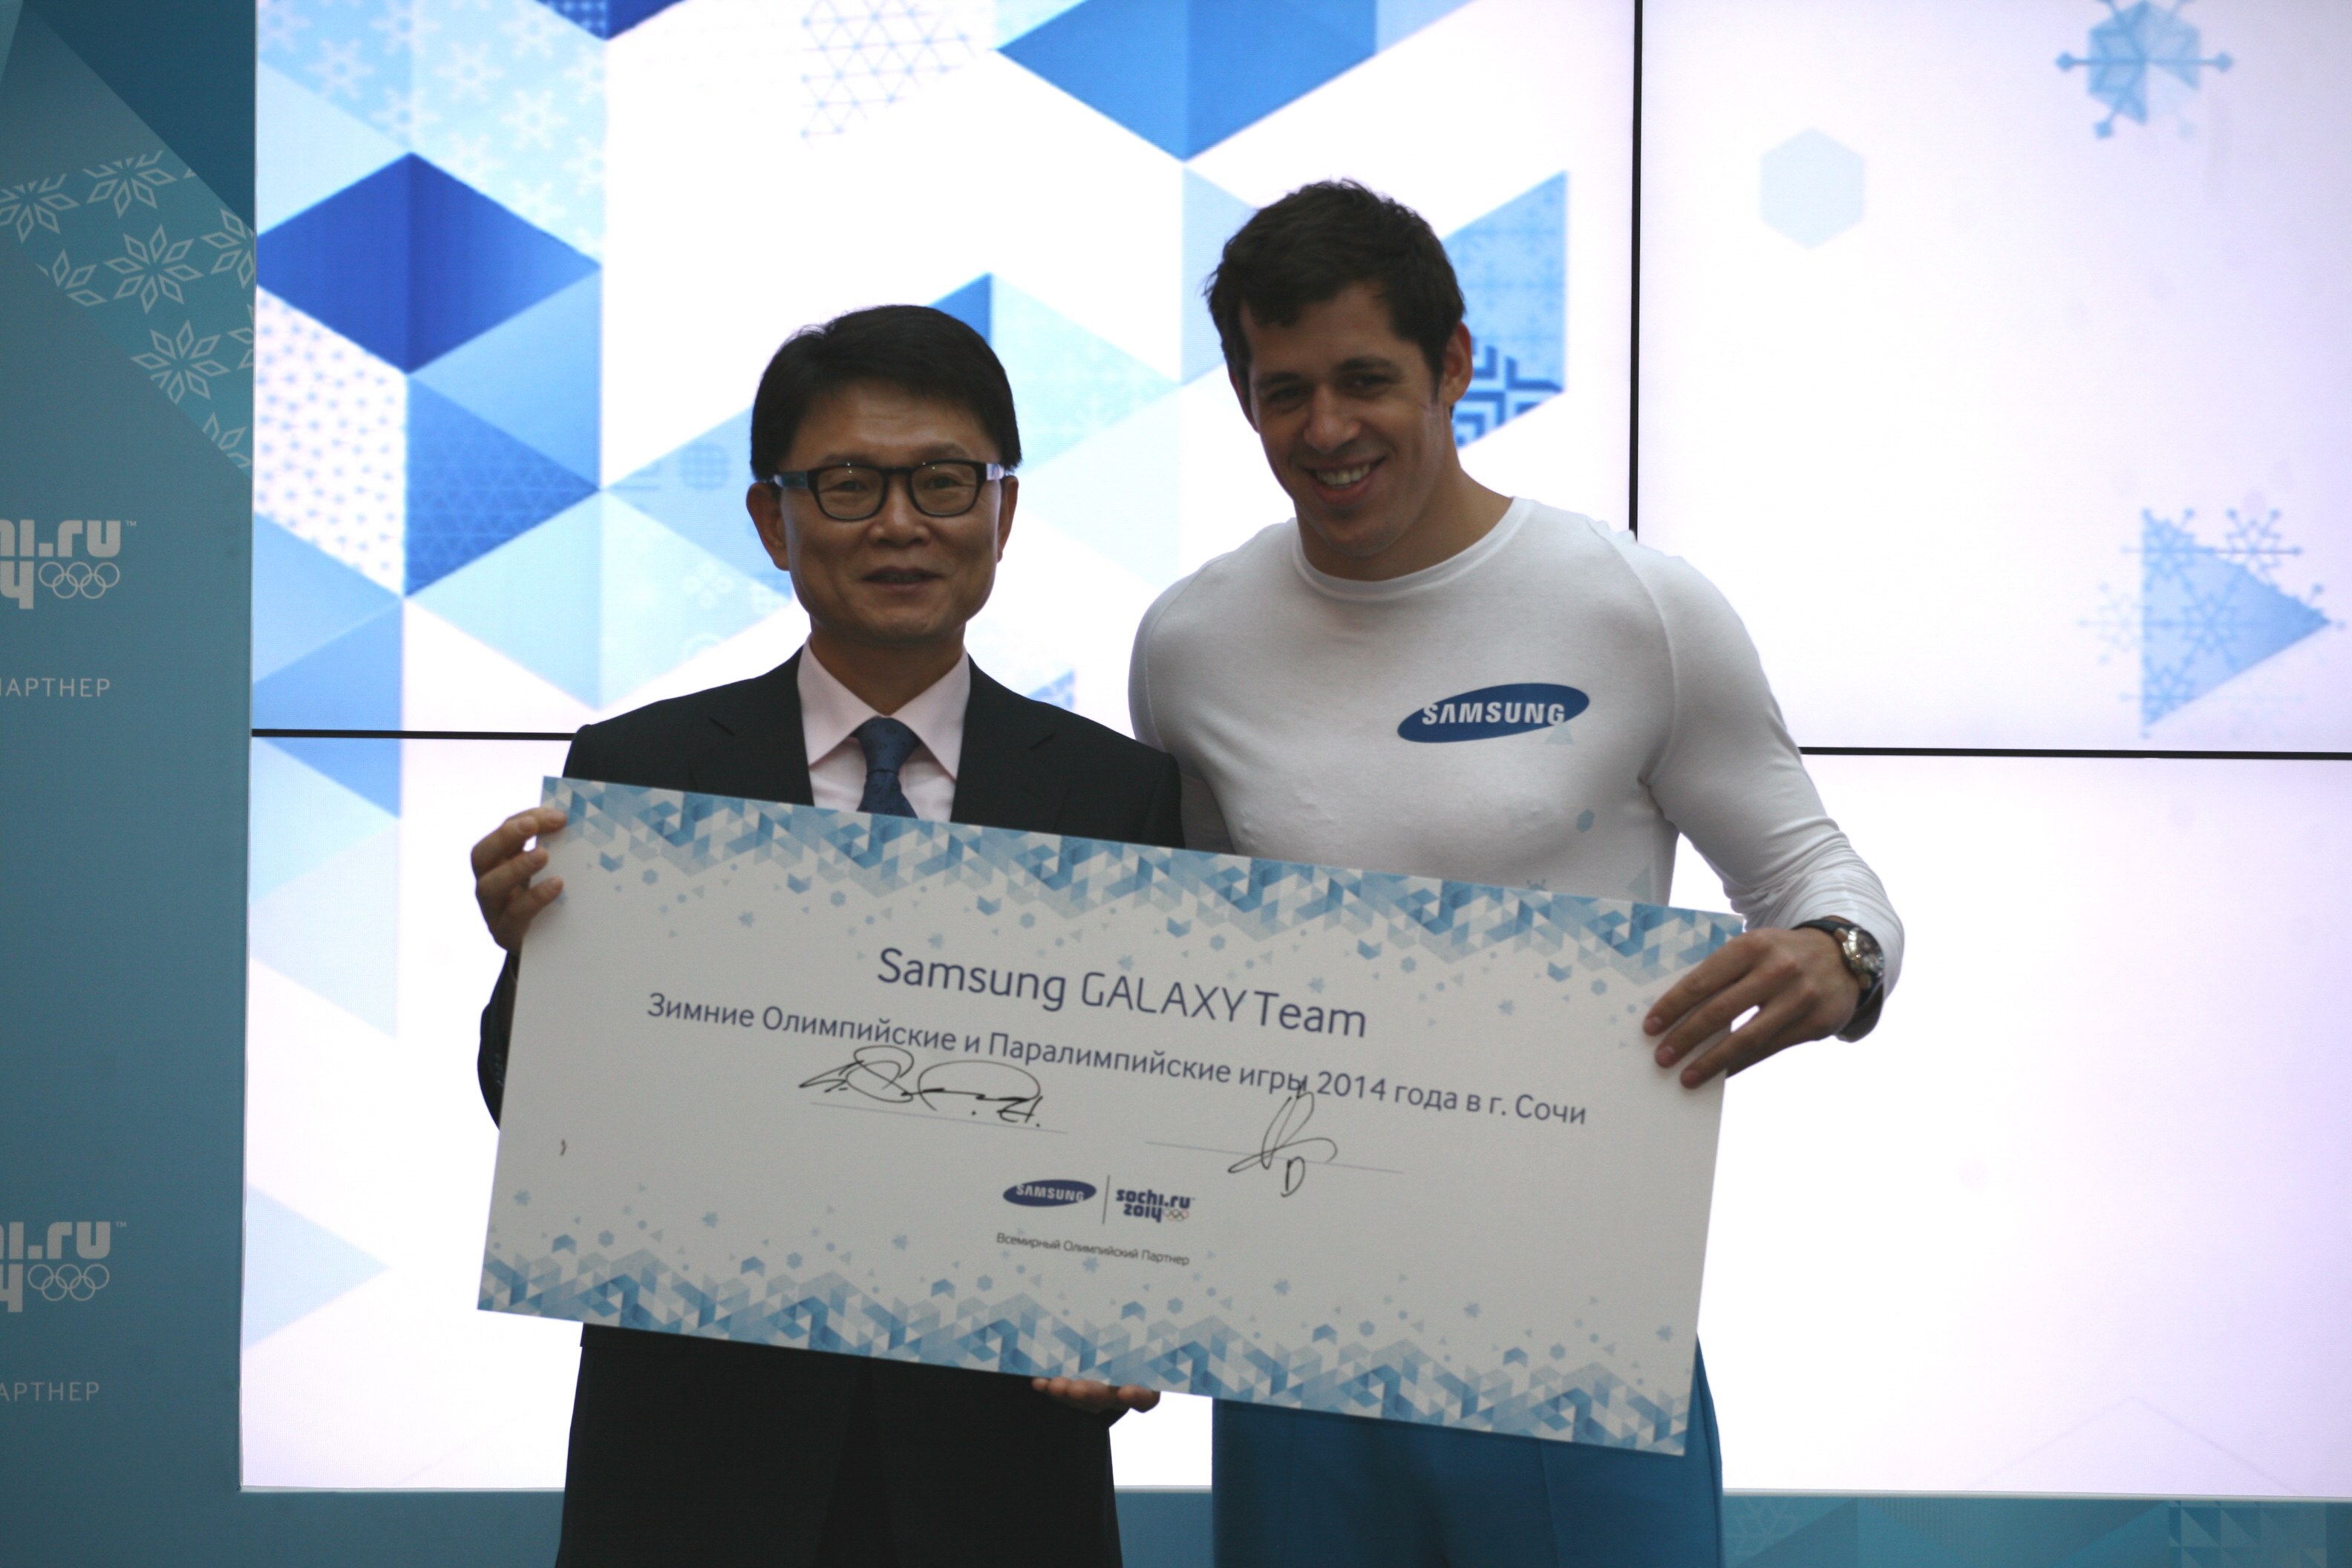 Samsung Presents its First Samsung GALAXY Team for Sochi 2014 Led by Russian Ice Hockey Star Evgeni Malkin